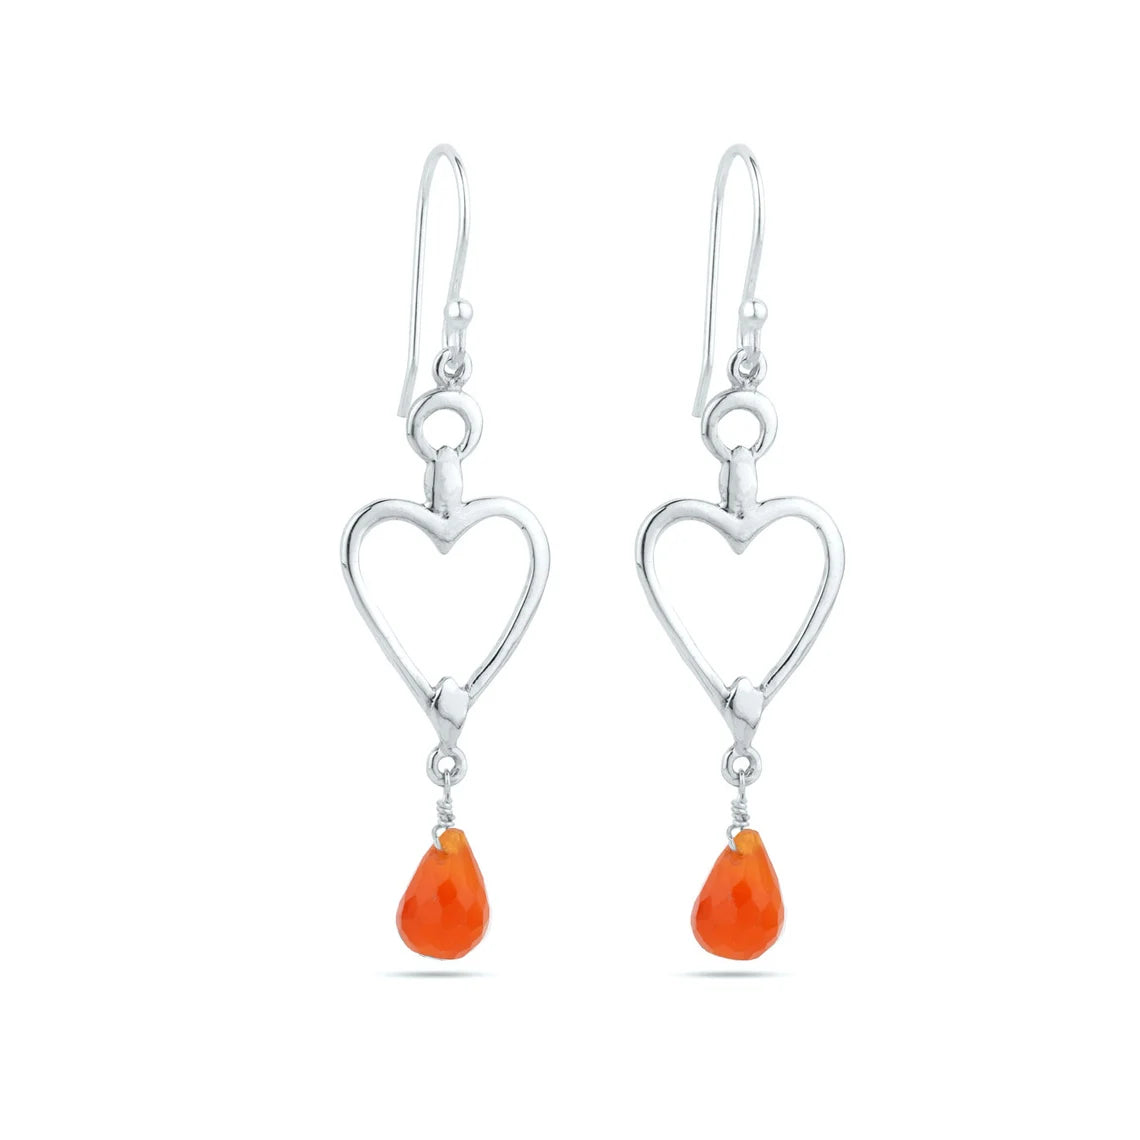 carnelian gemstone earrings - carnelian dangle earrings - Briolette earrings - hook earrings - 925 sterling silver